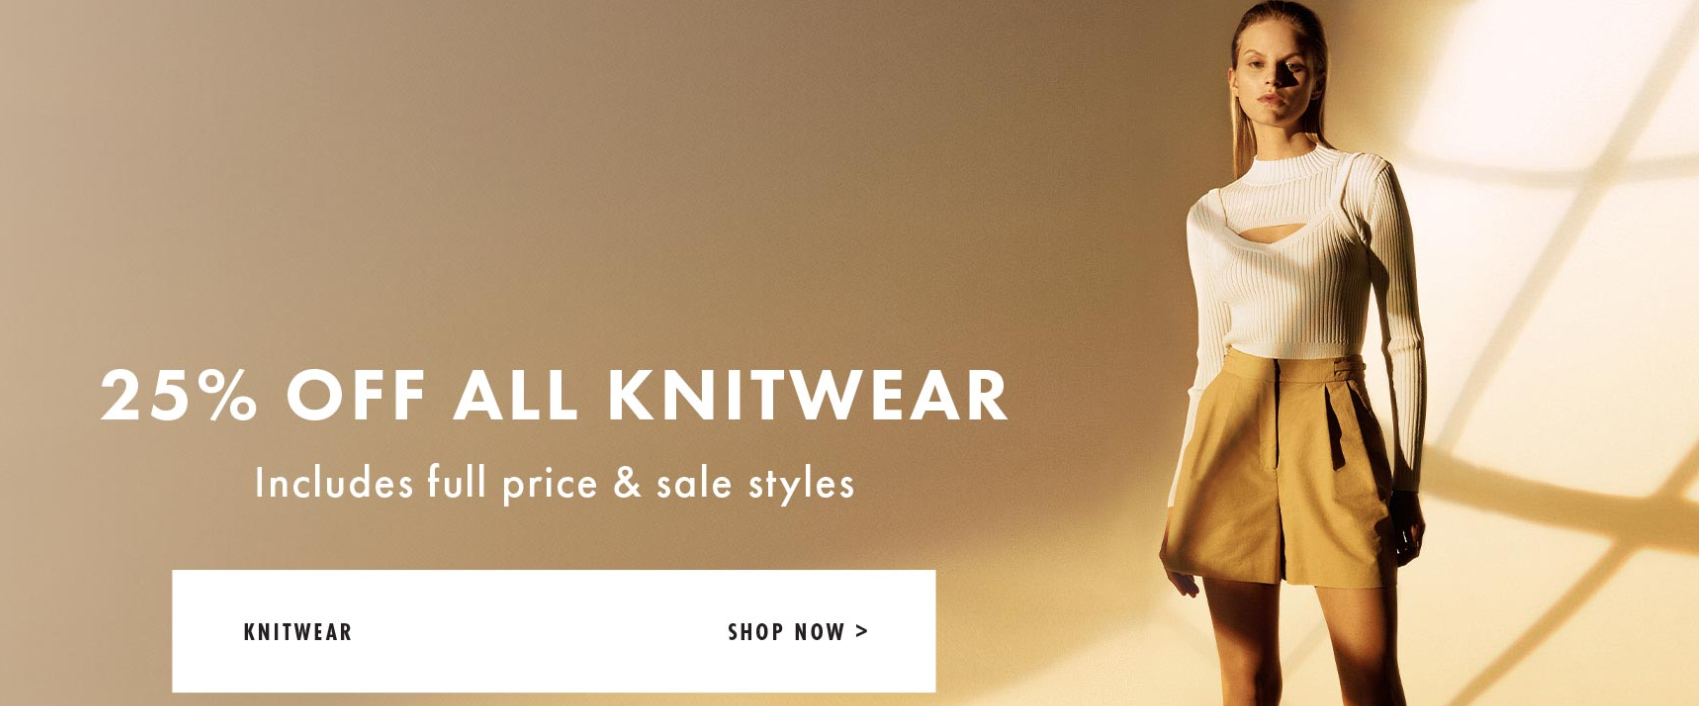 25% off all Knitwear